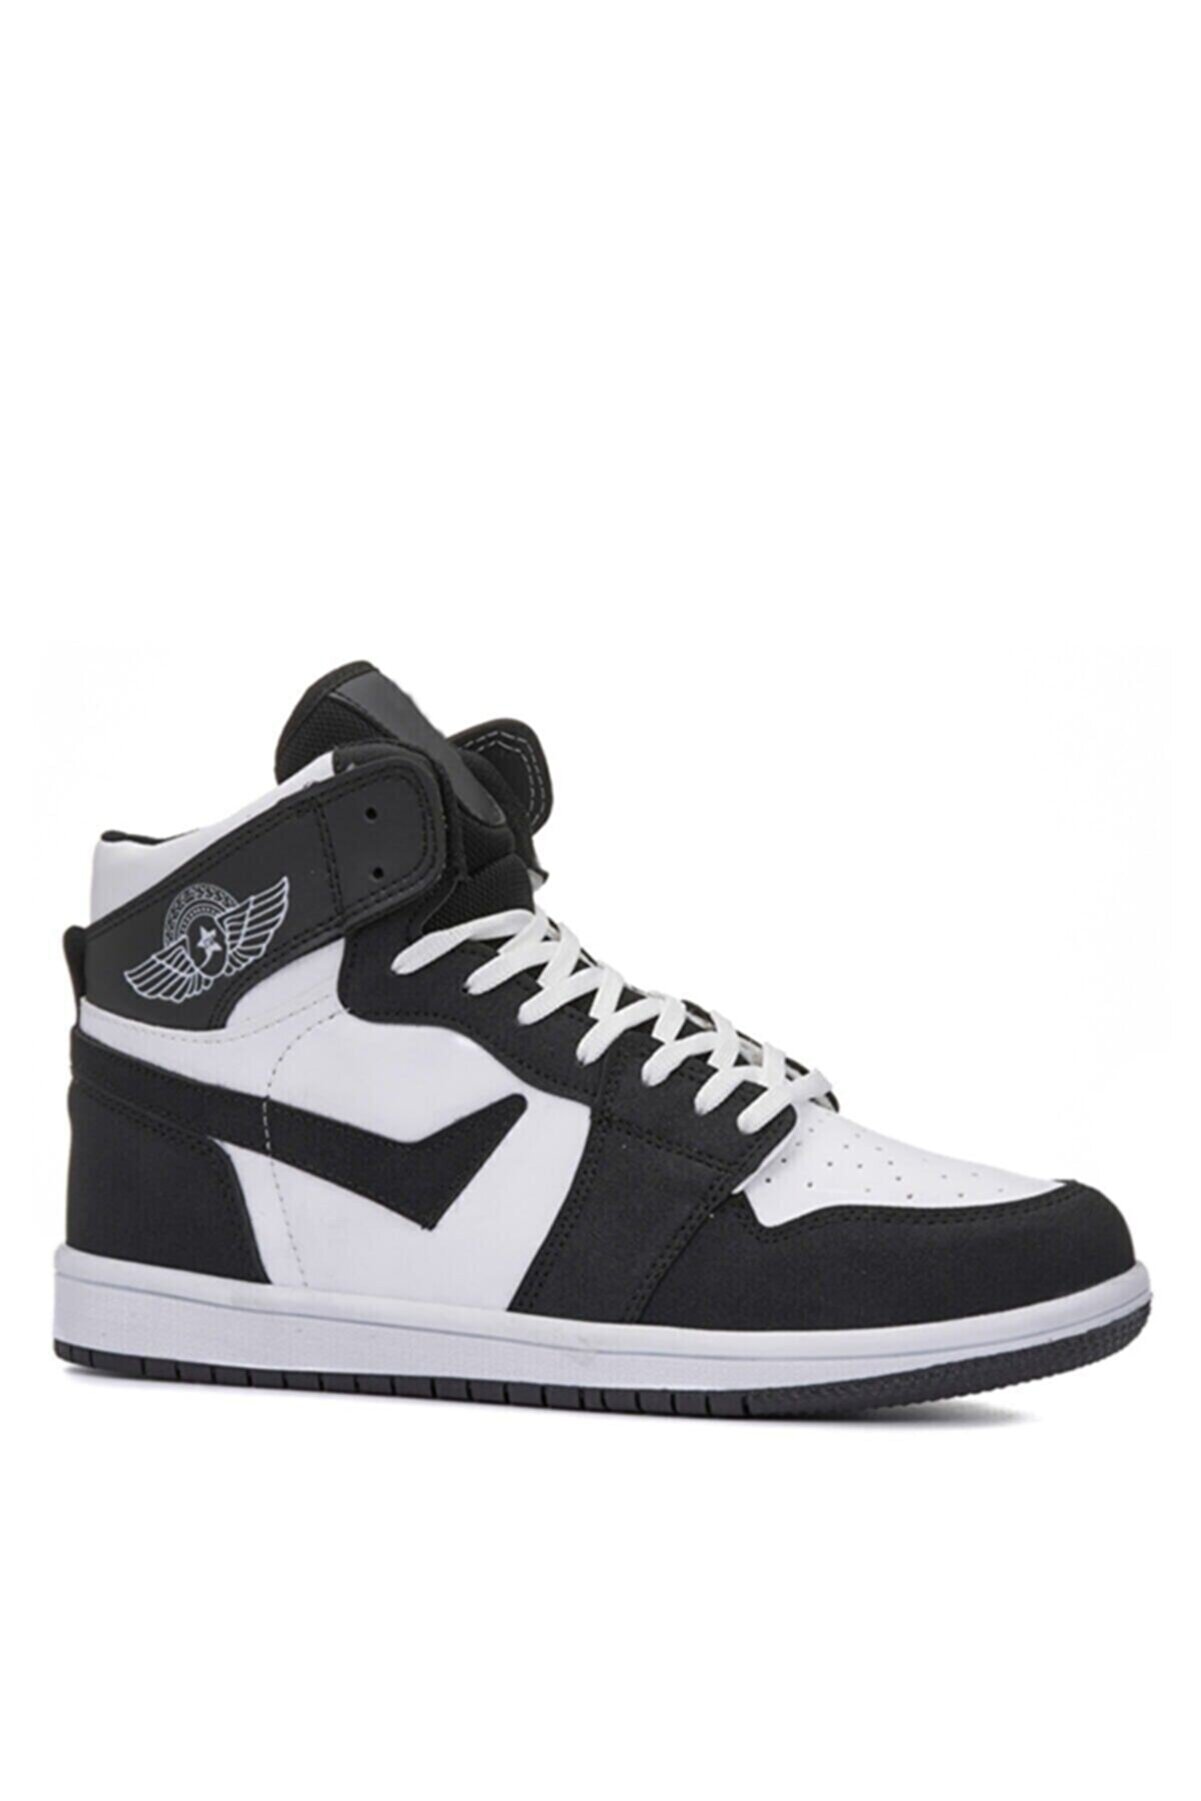 yemenioutlet Unisex Boğazlı Spor Ayakkabı Bilekli Sneaker Air Beyaz-siyah Çizgili (36-44) Numara Uzun Boğazlı